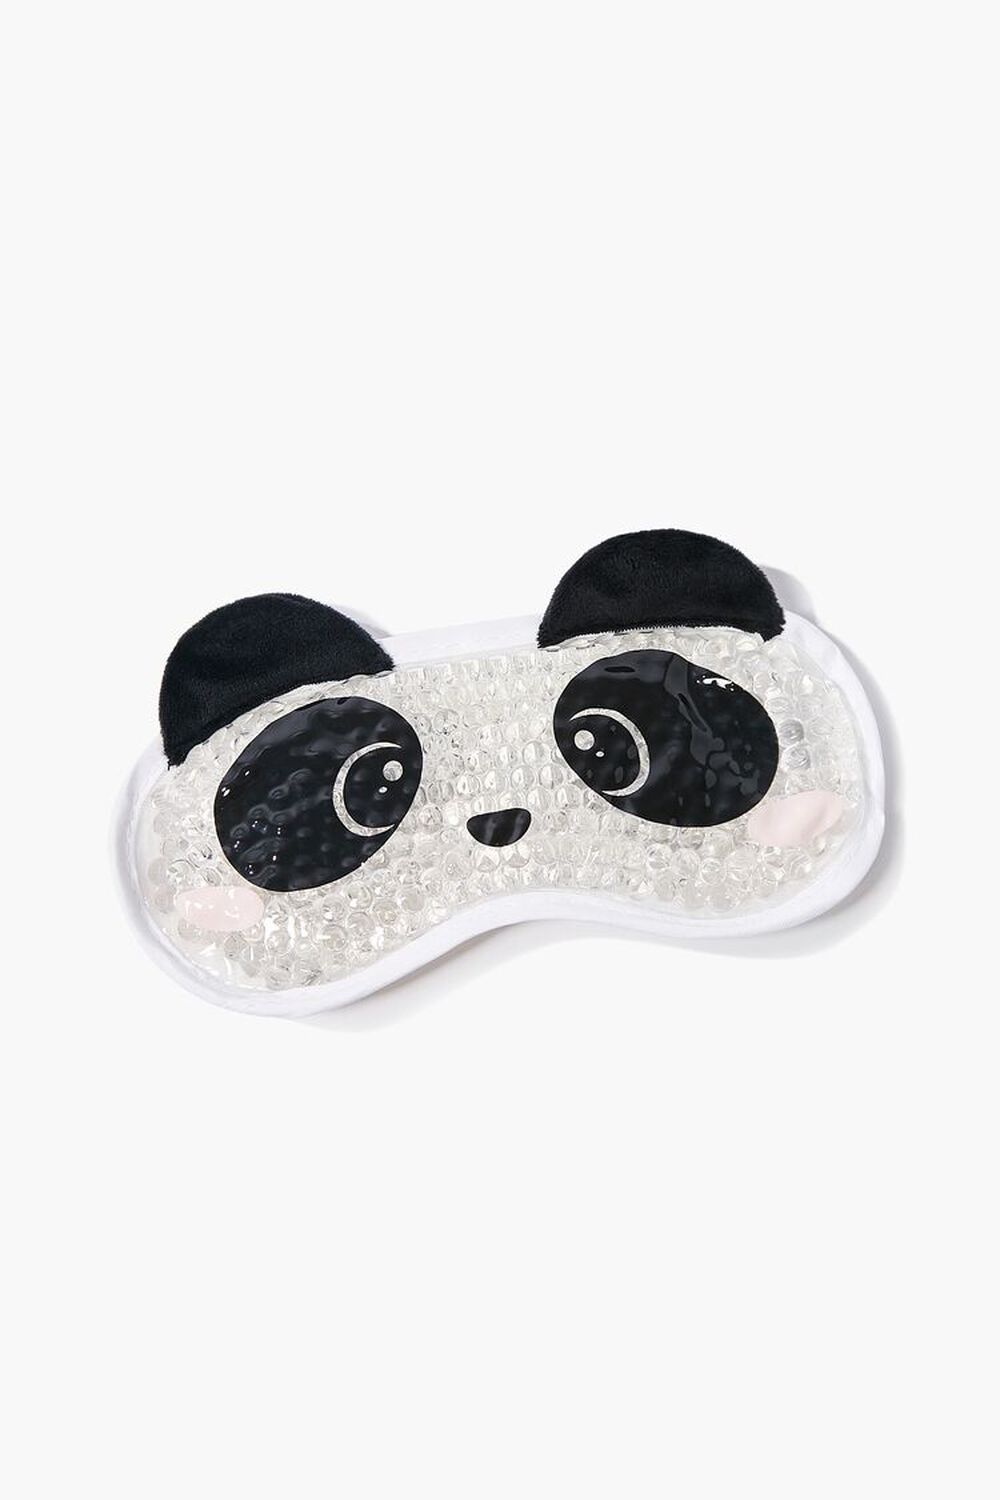 BLACK/MULTI Panda Graphic Eye Mask, image 1